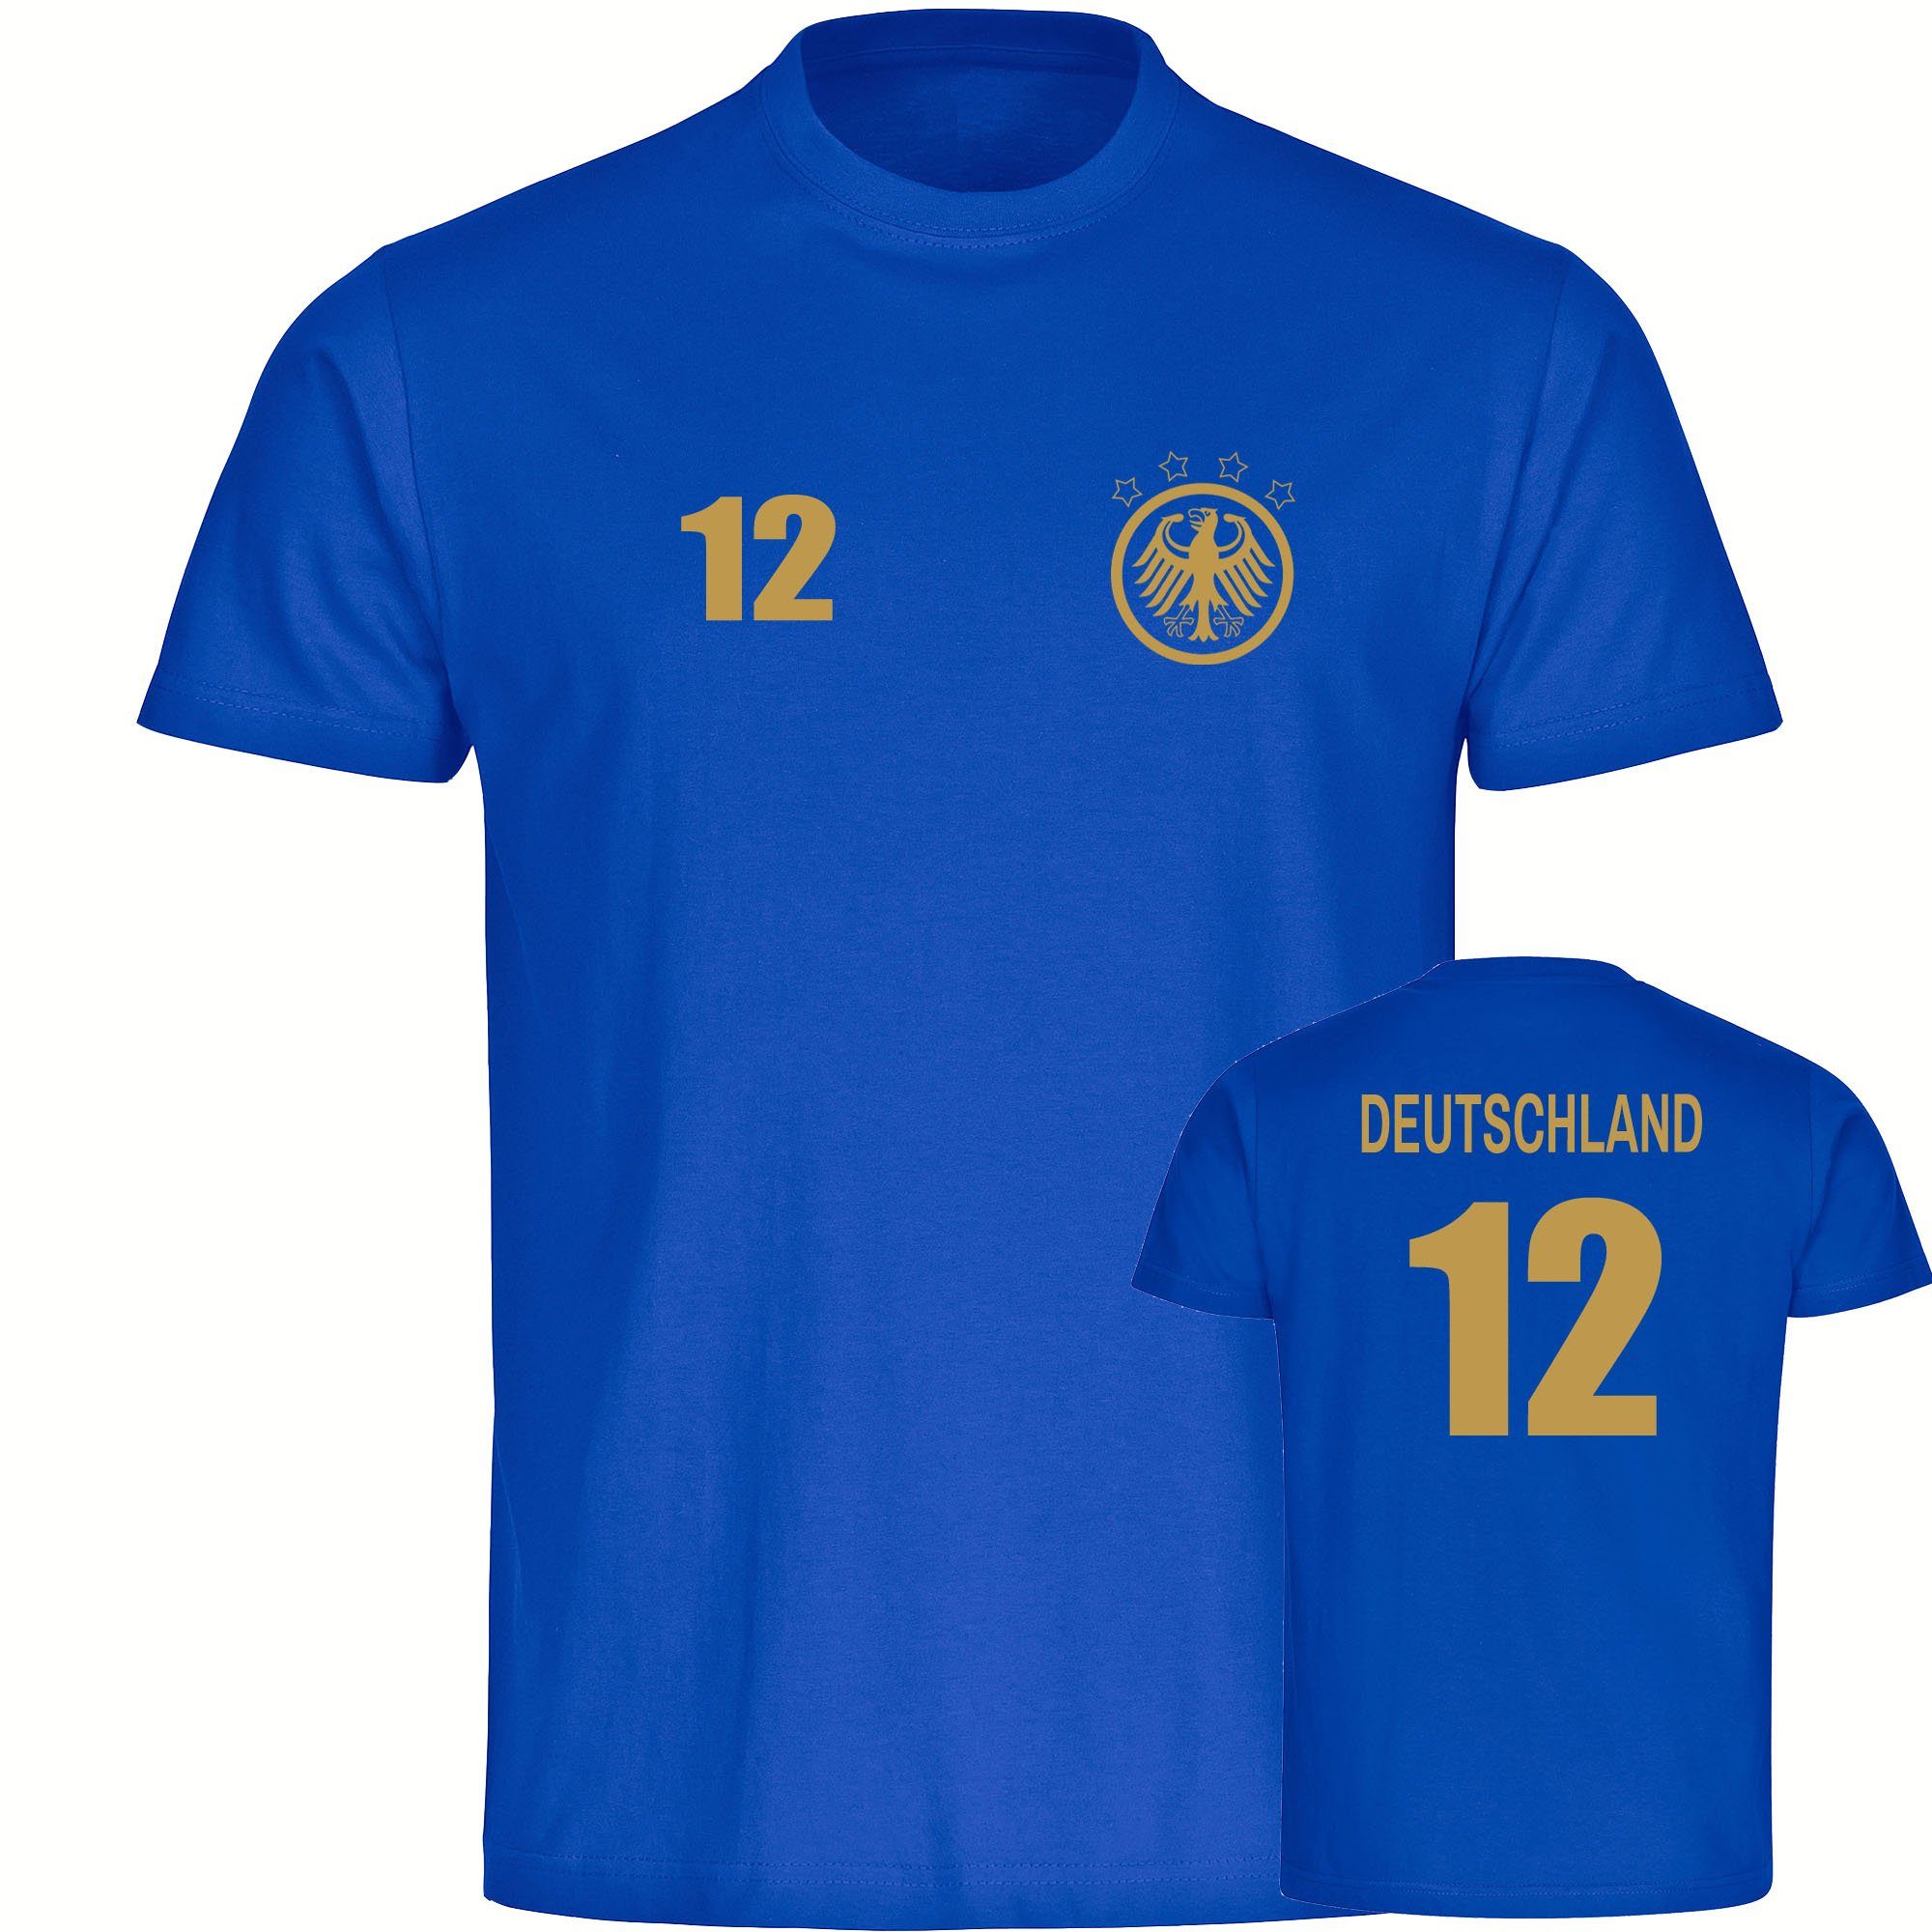 multifanshop T-Shirt Herren Deutschland - Adler Retro Trikot 12 Gold - Männer